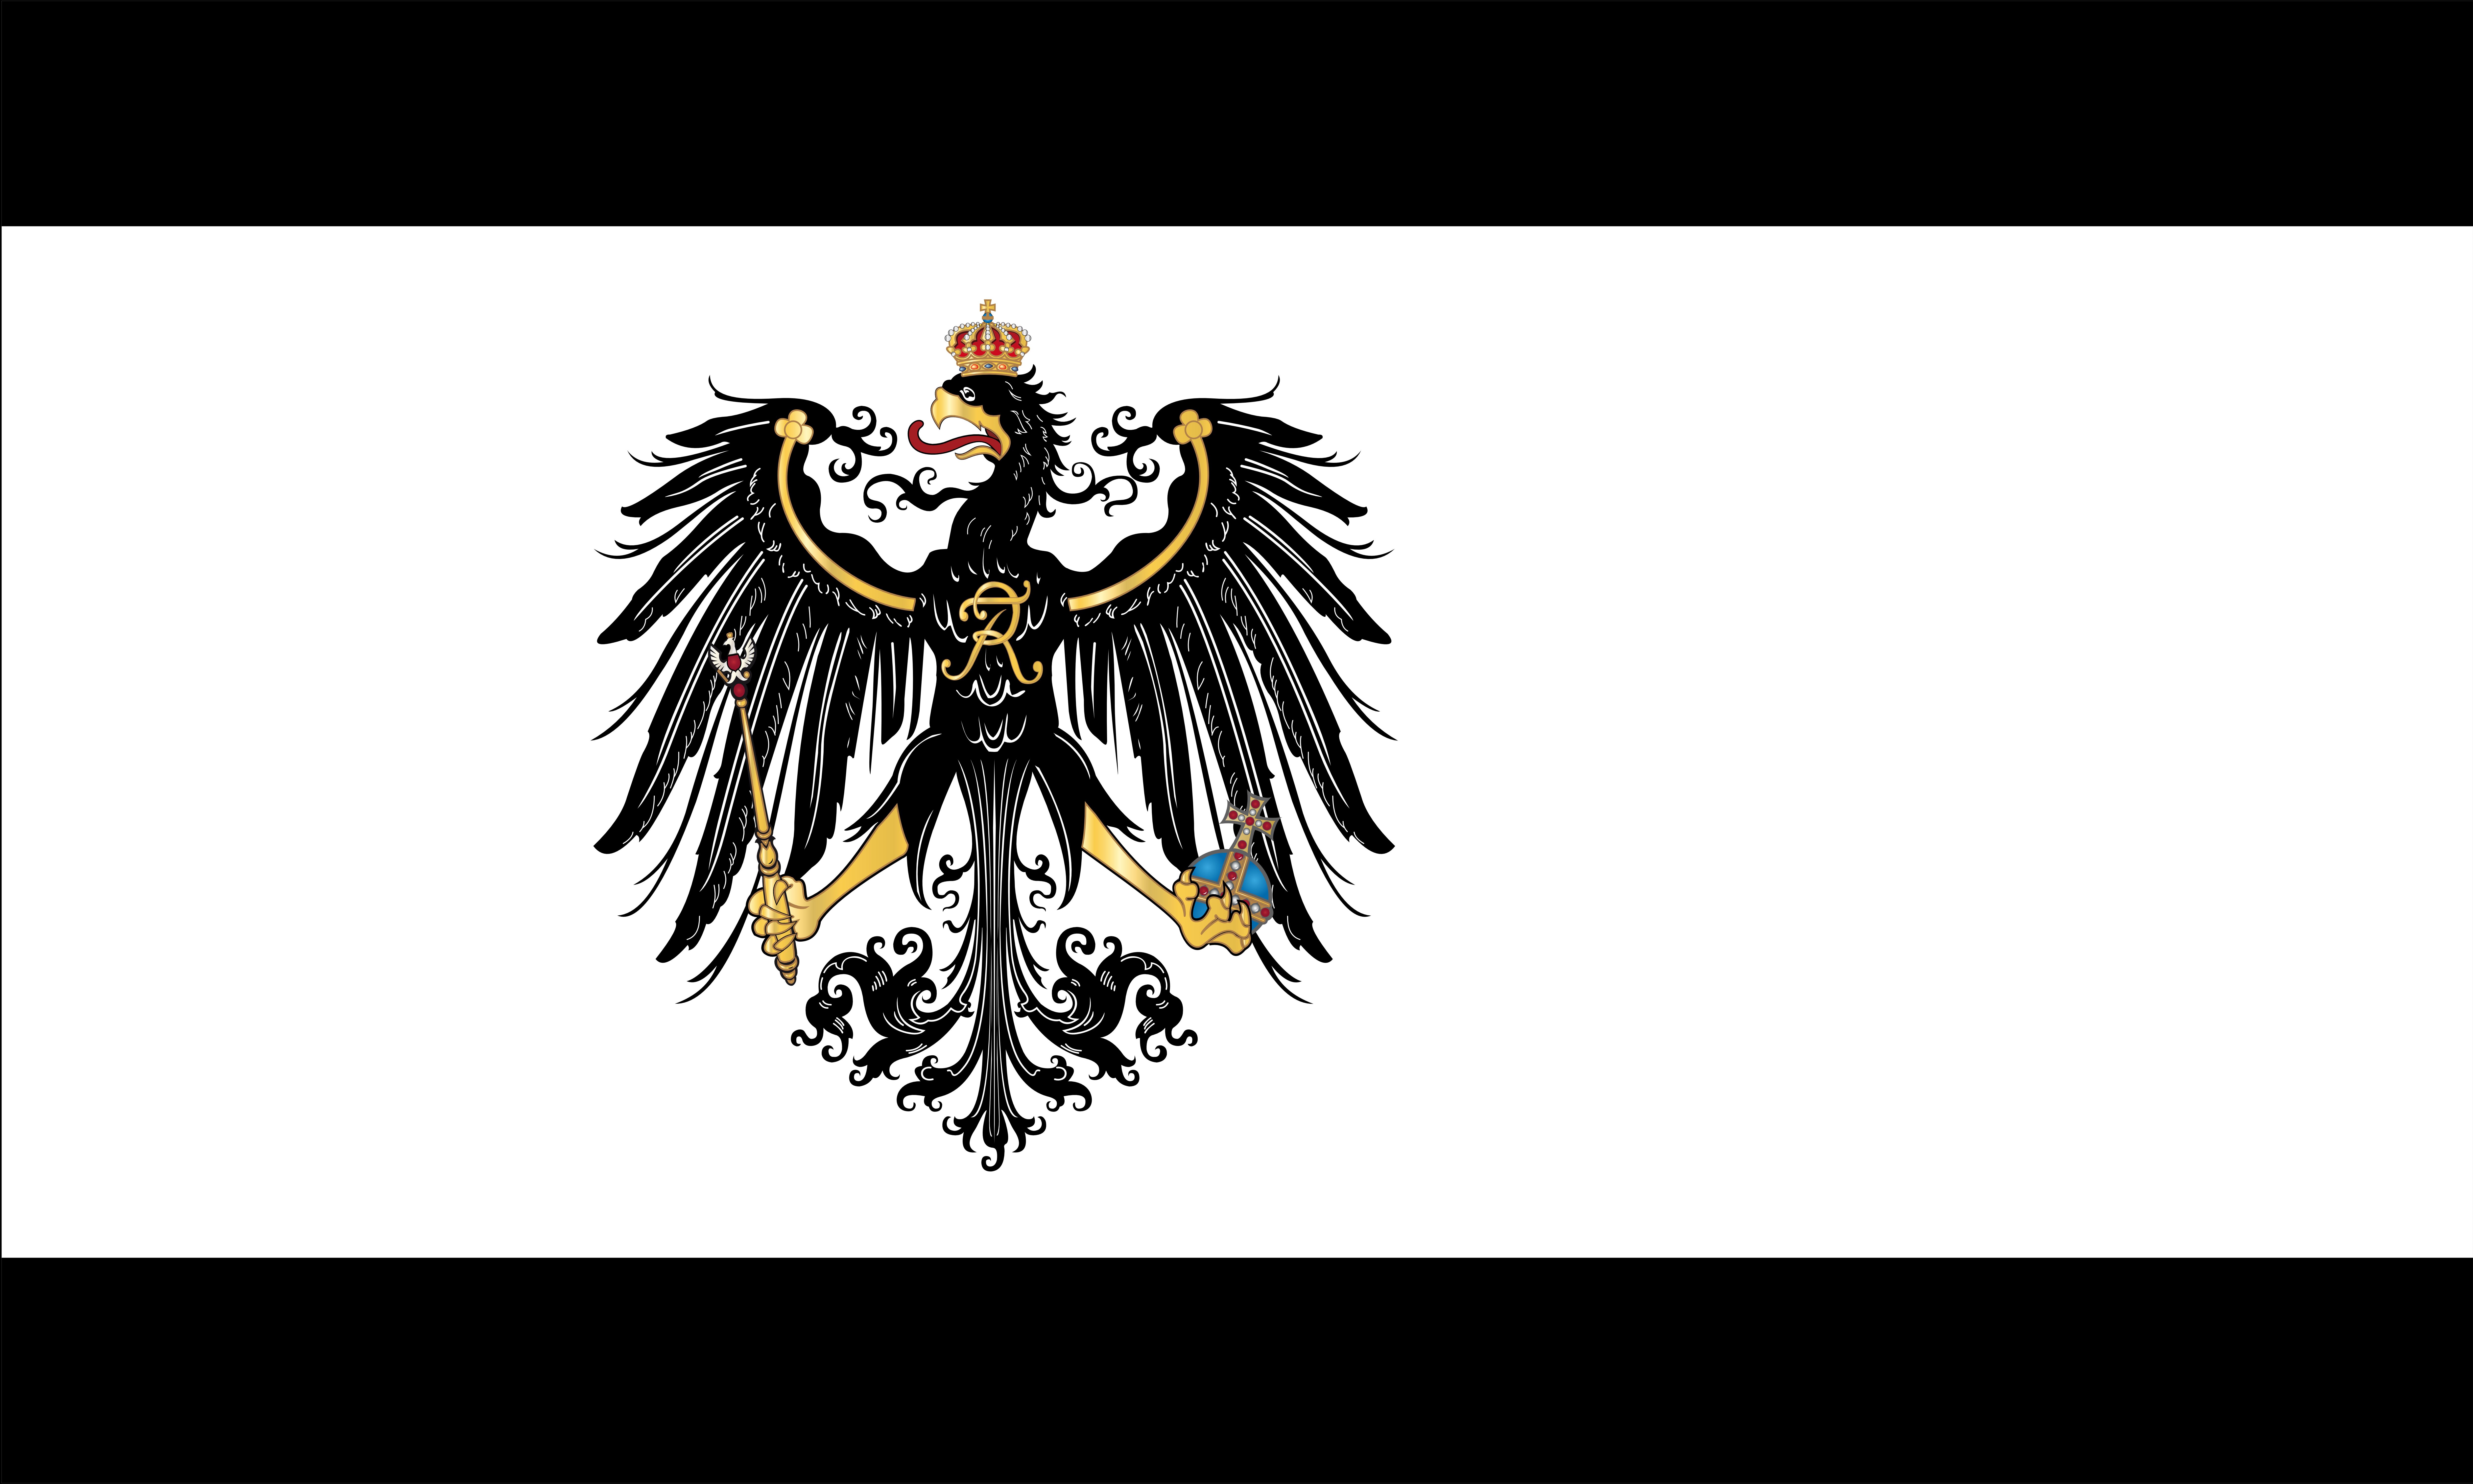 Скачать обои Флаг Пруссии на телефон бесплатно